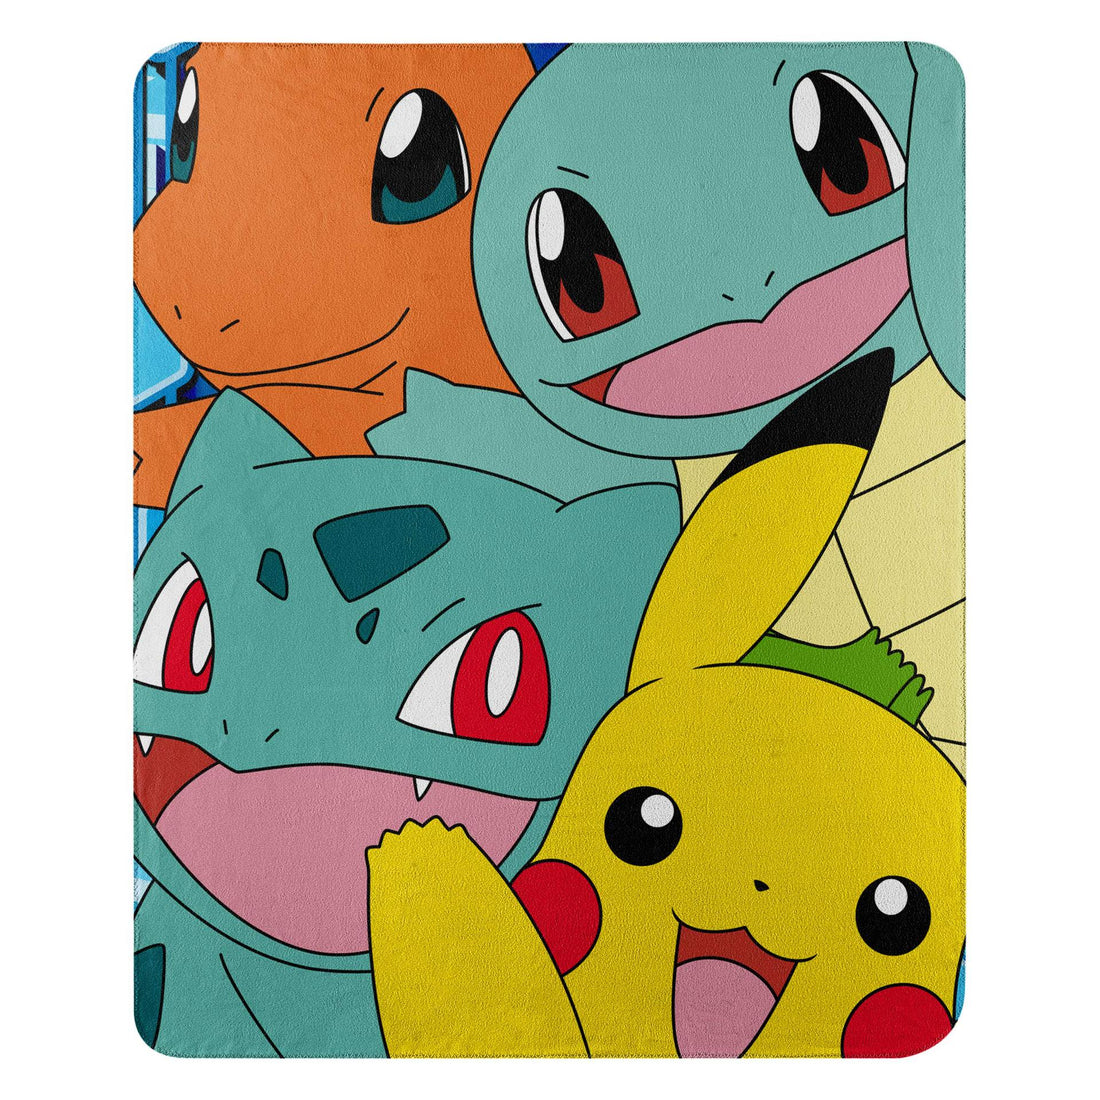 Pokémon Blanket